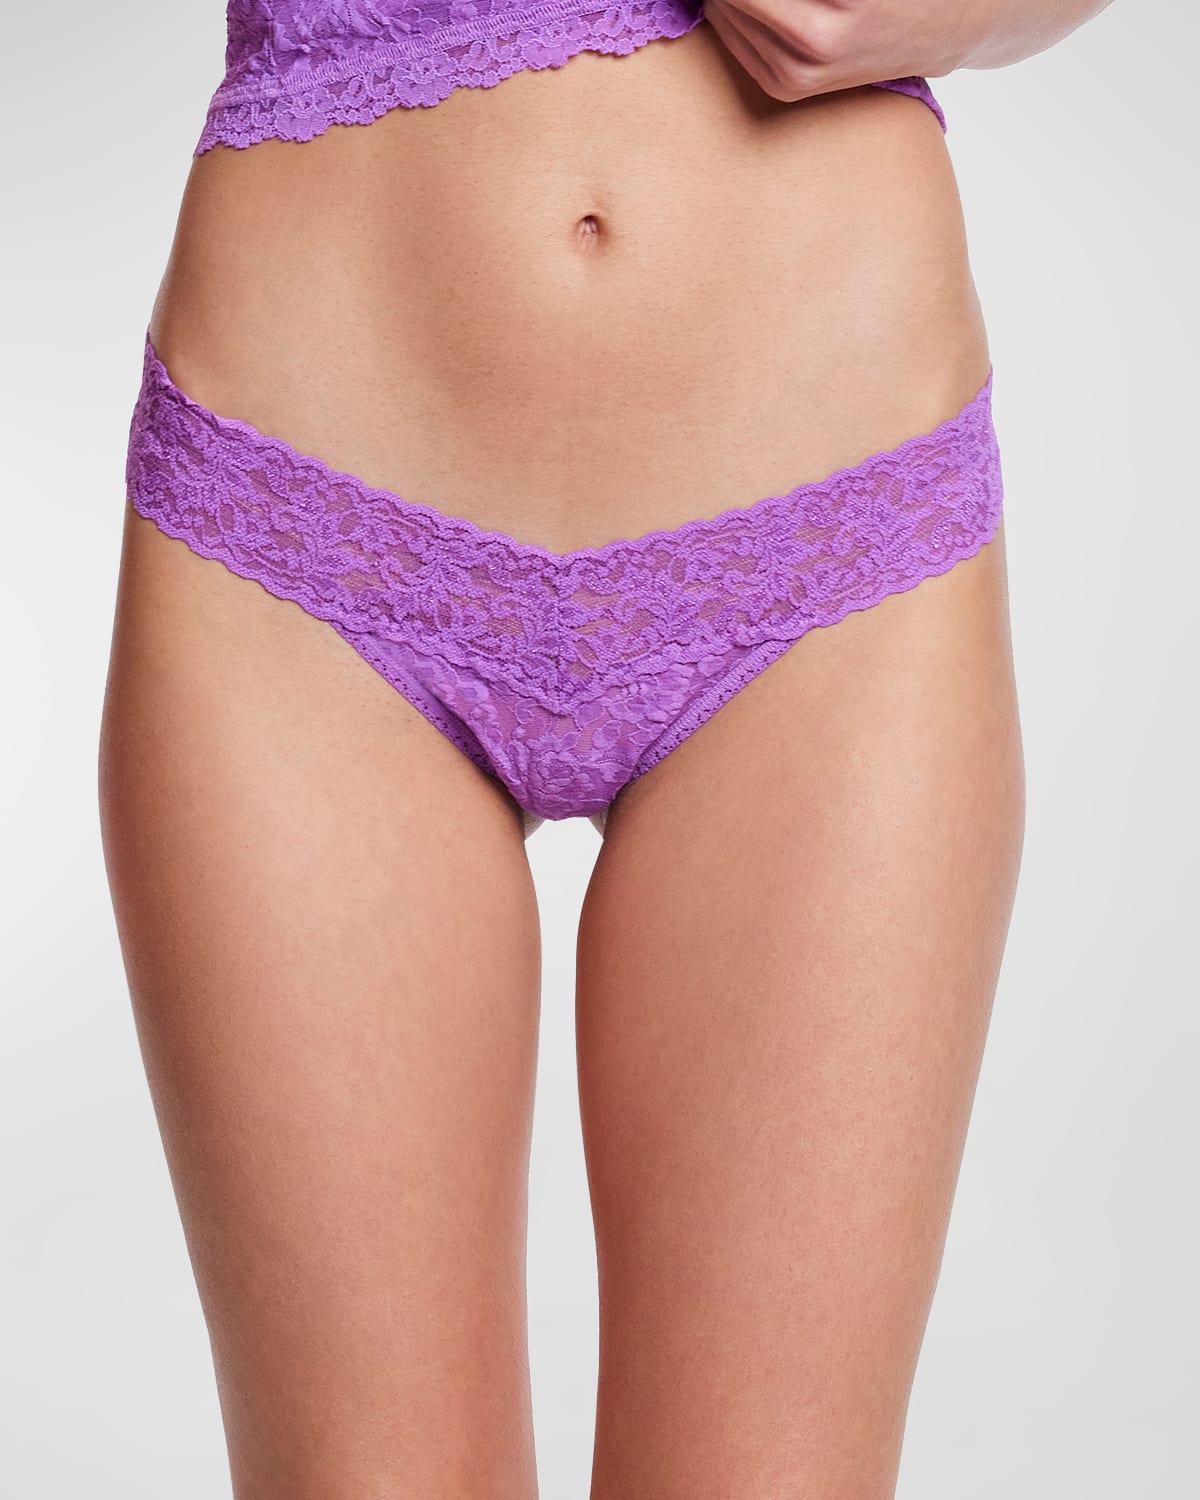 Shop Hanky Panky Signature Lace Low-rise Thong In Violet Haze (purple)